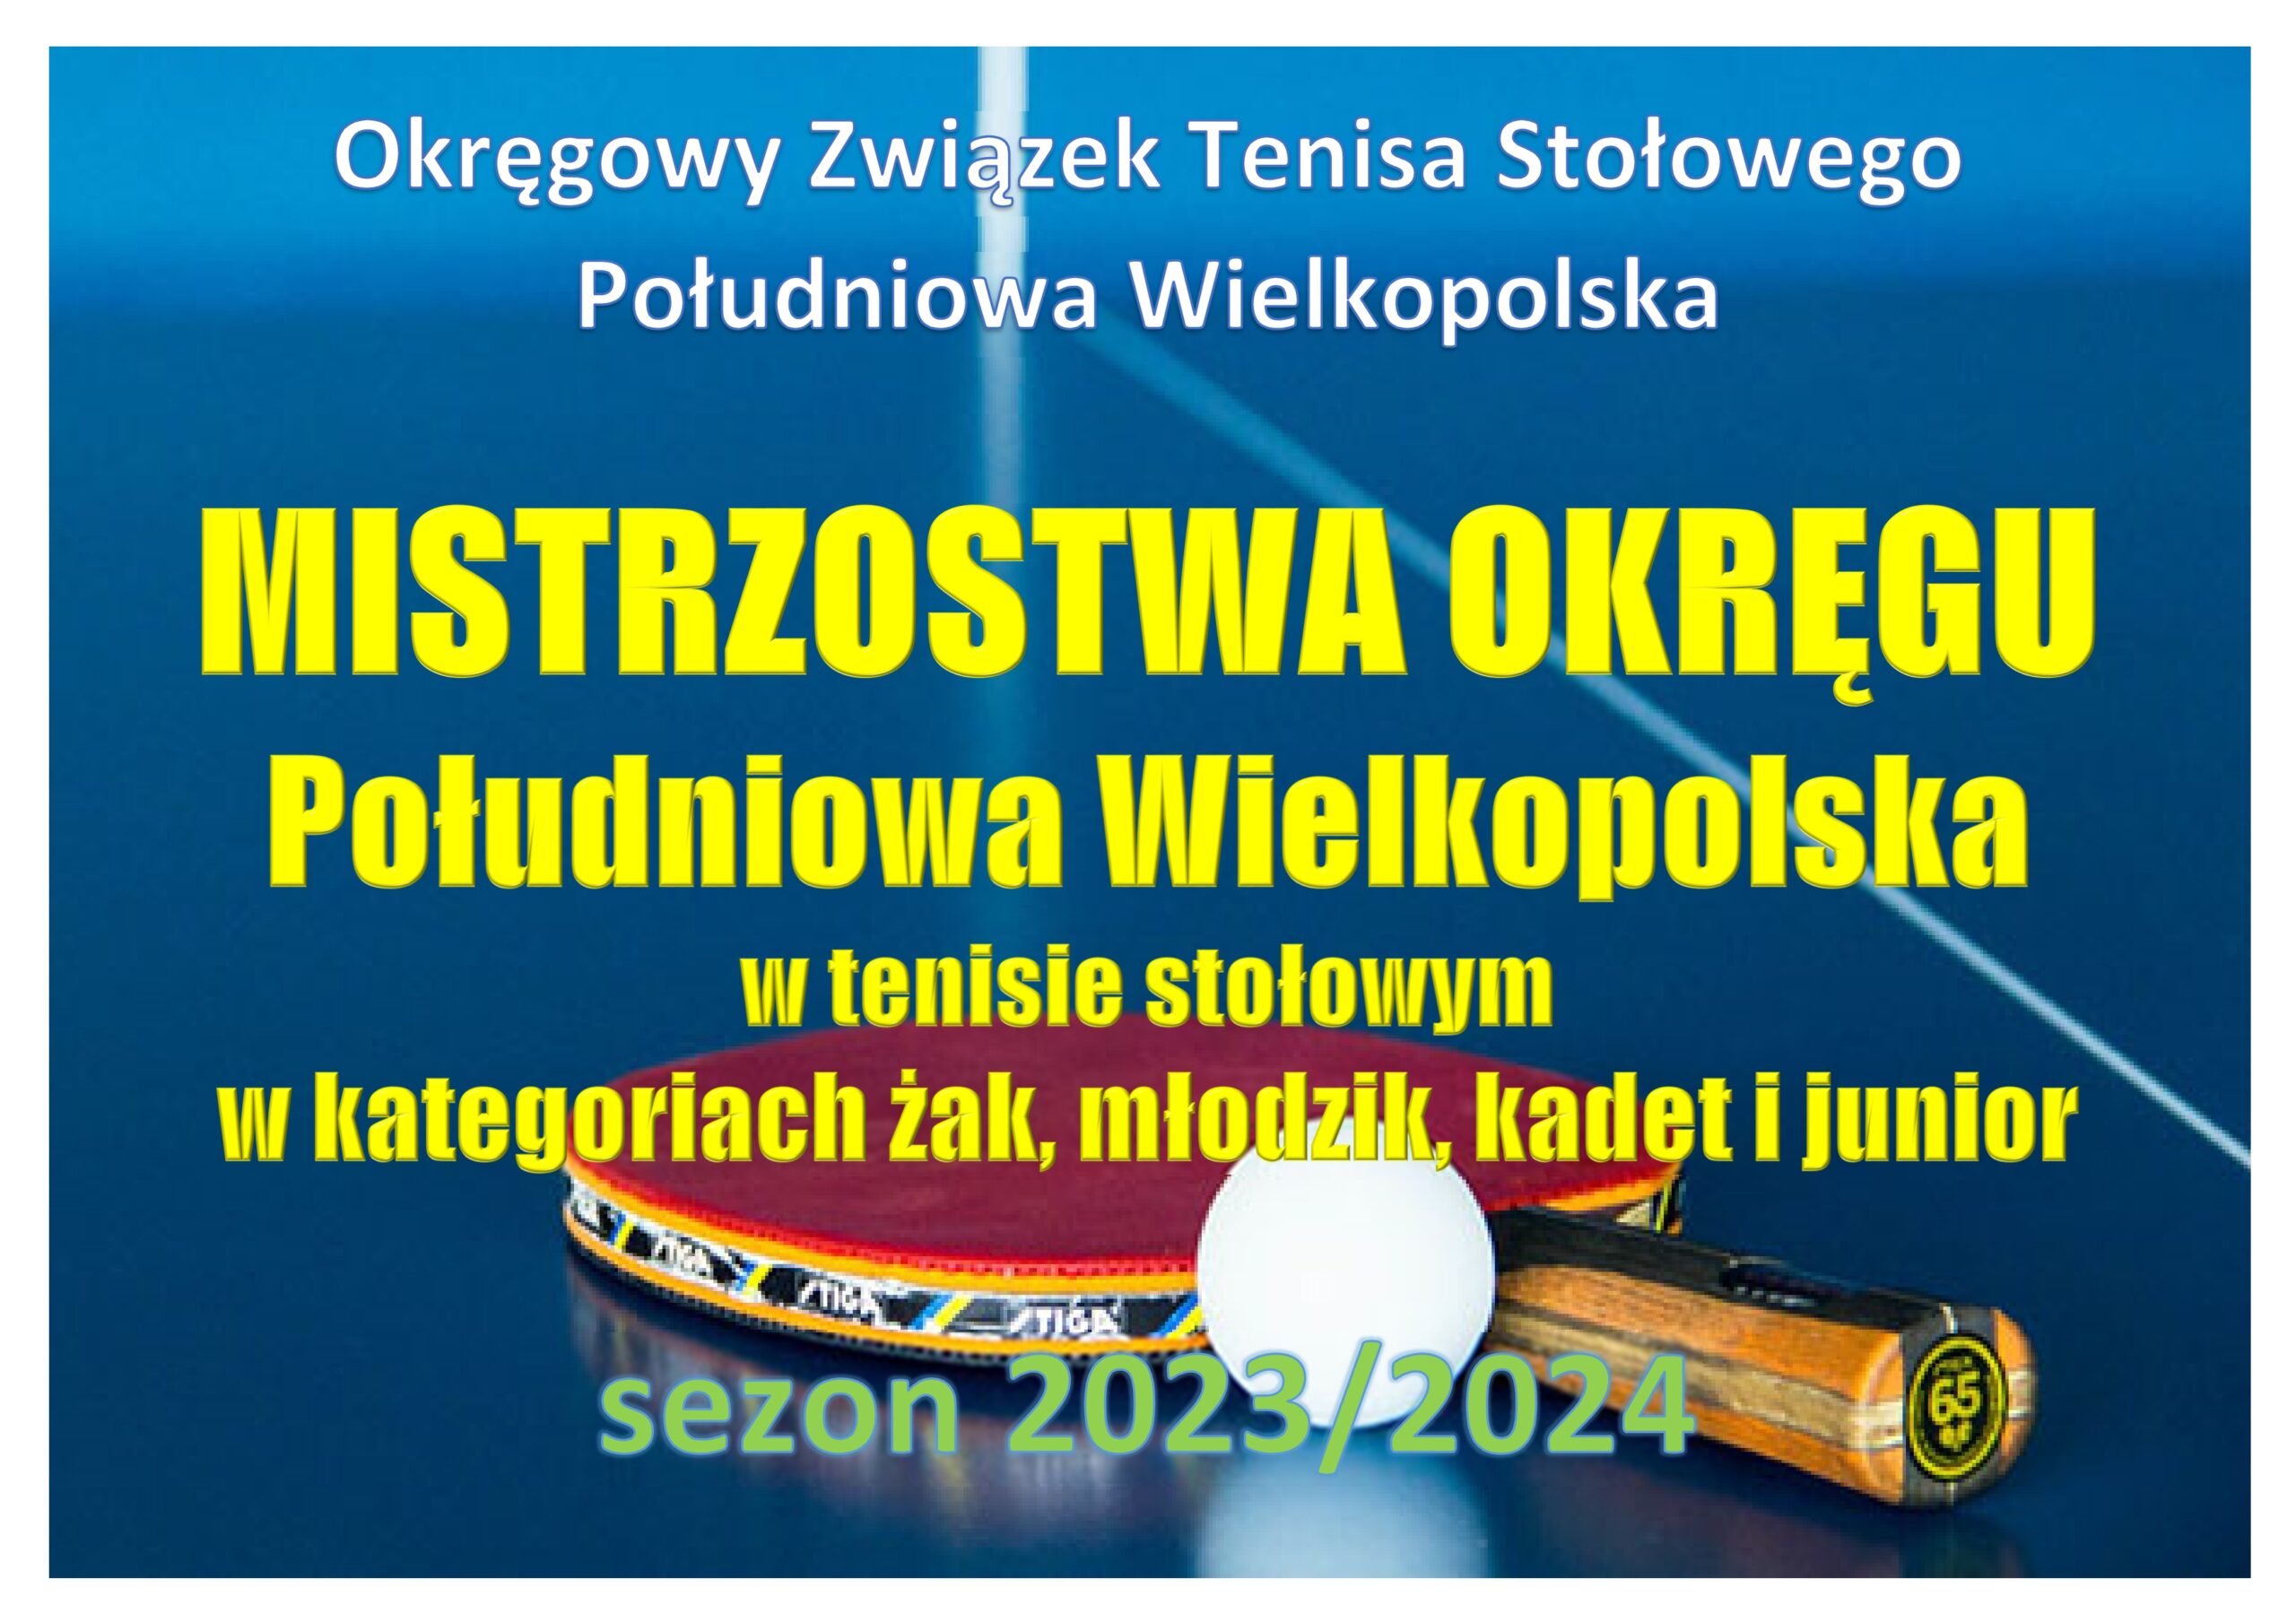 Read more about the article Mistrzostwa Okręgu Południowa Wielkopolska w kategoriach żak, młodzik, kadet i junior